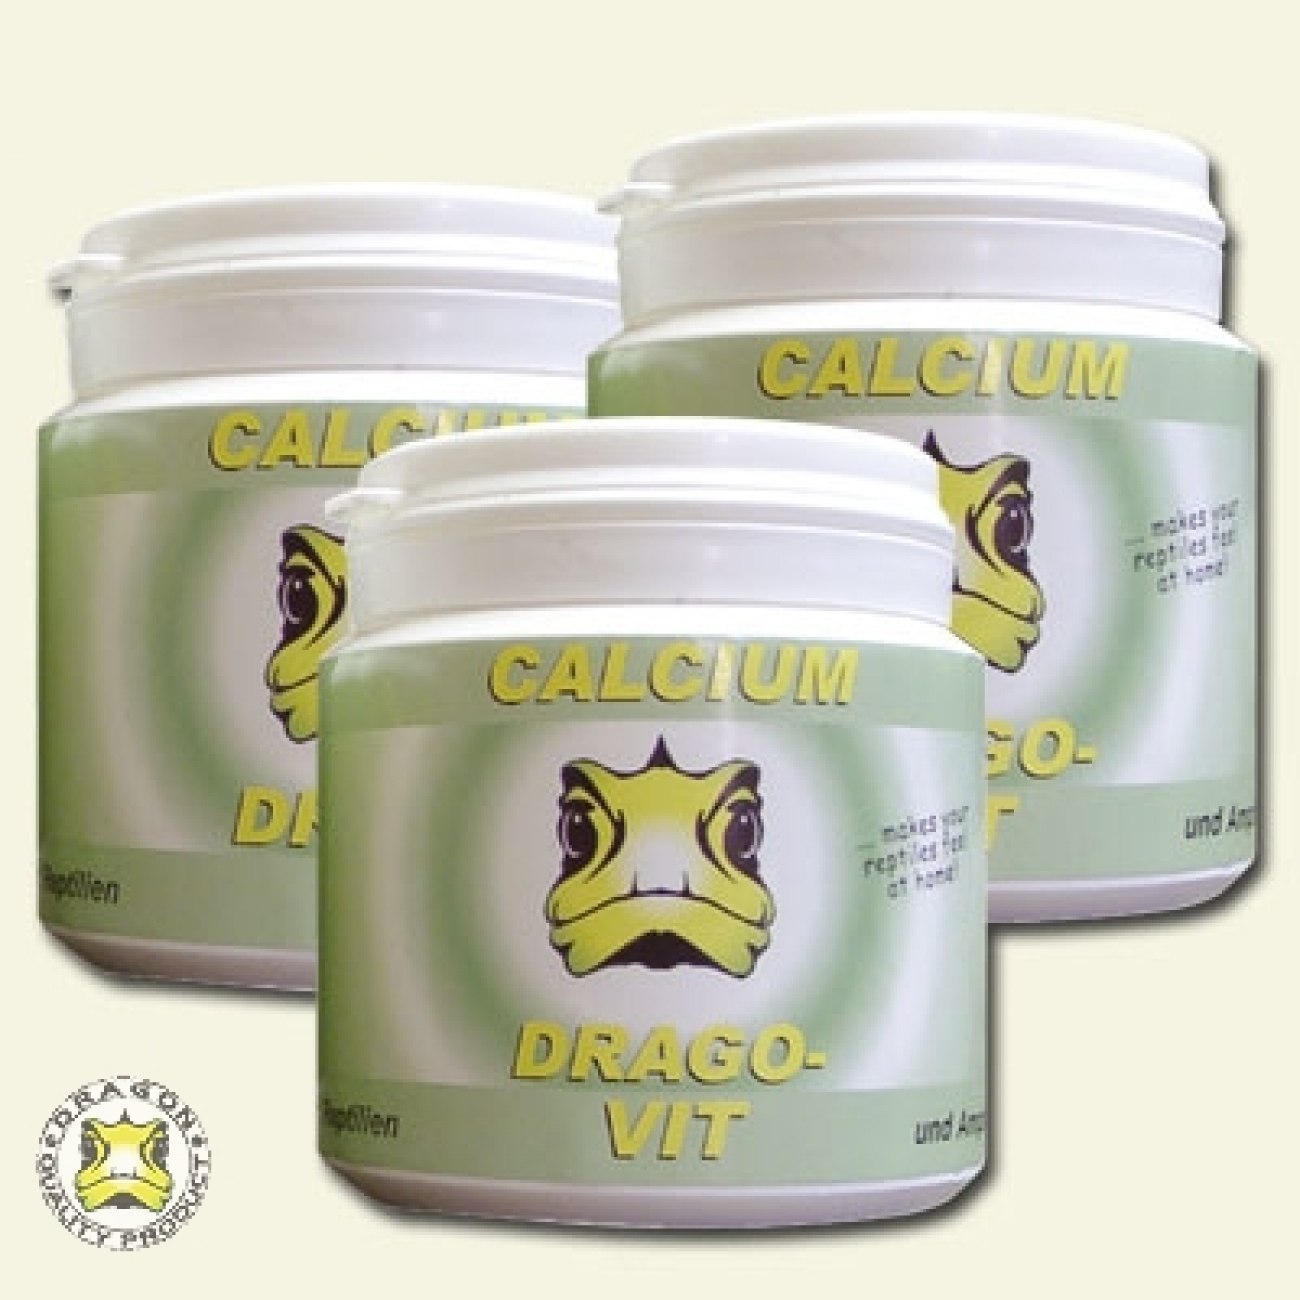 DRAGO - VIT Calcium 100g